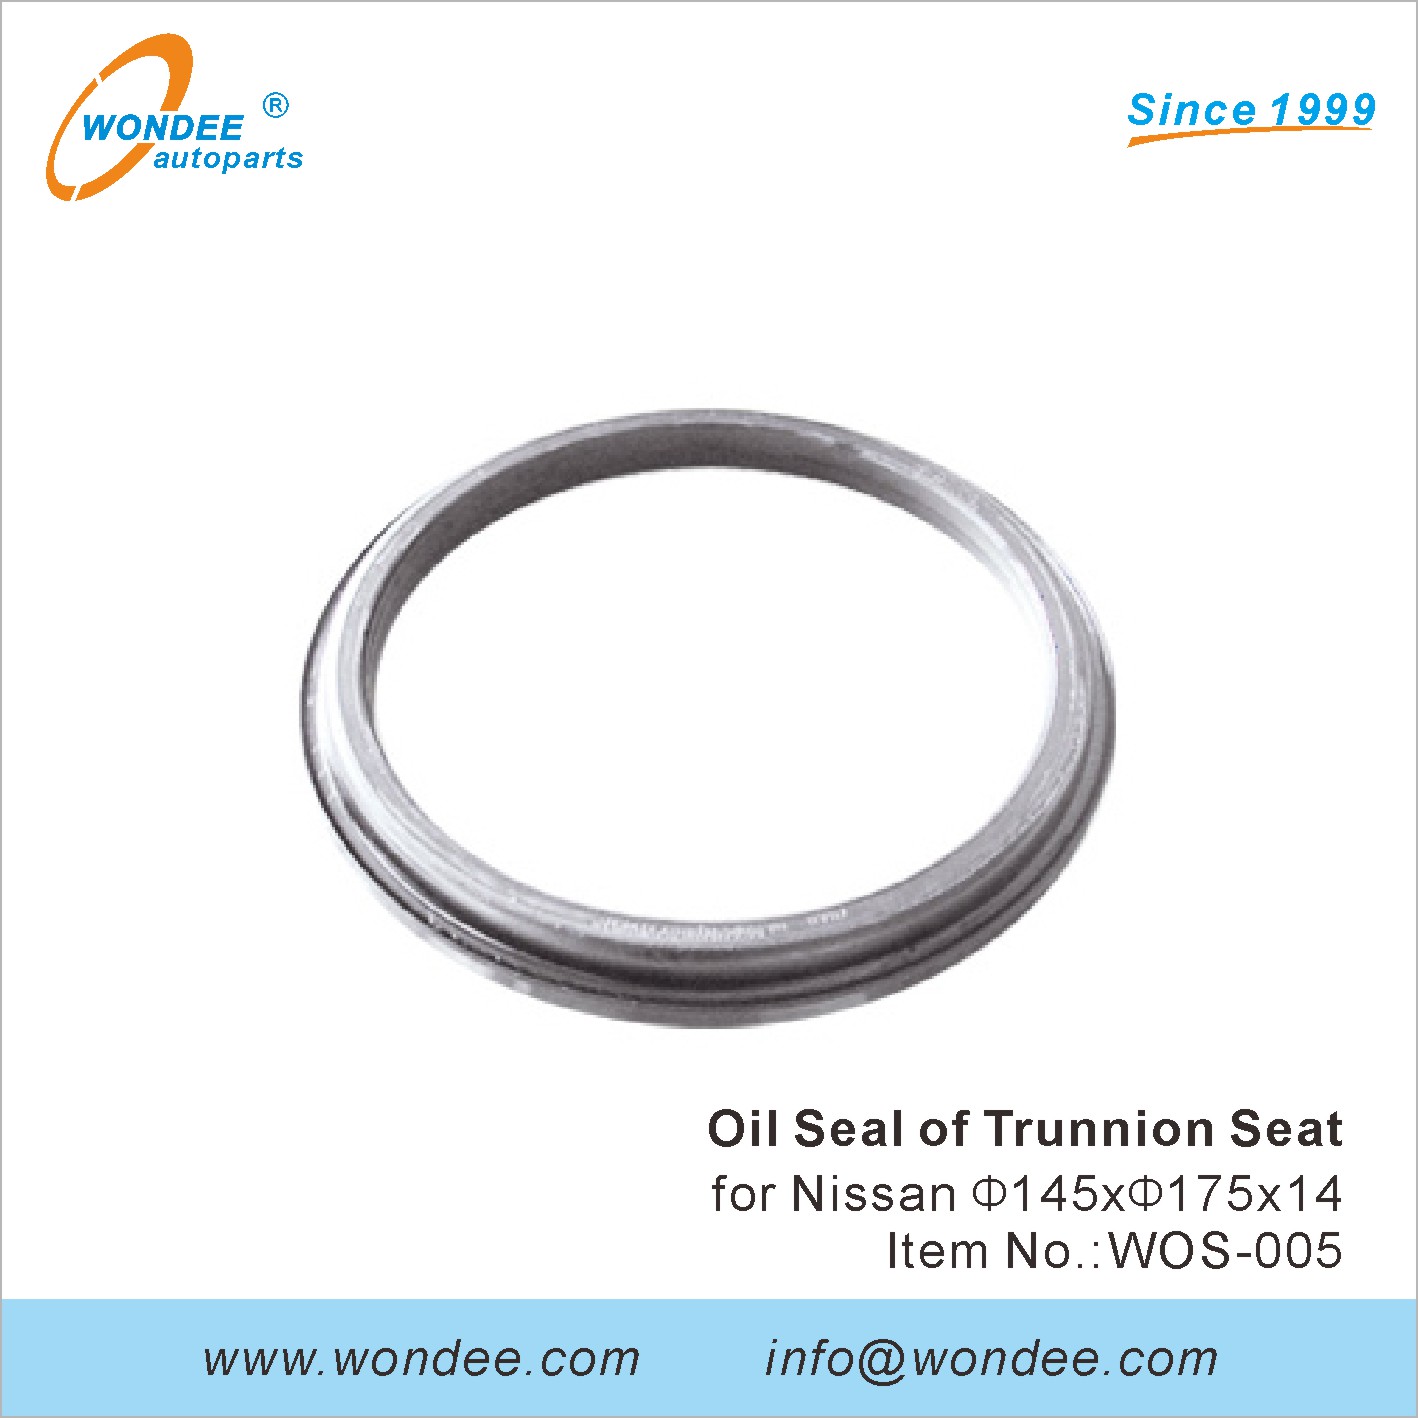 WONDEE oil seal of trunnion seat (5)